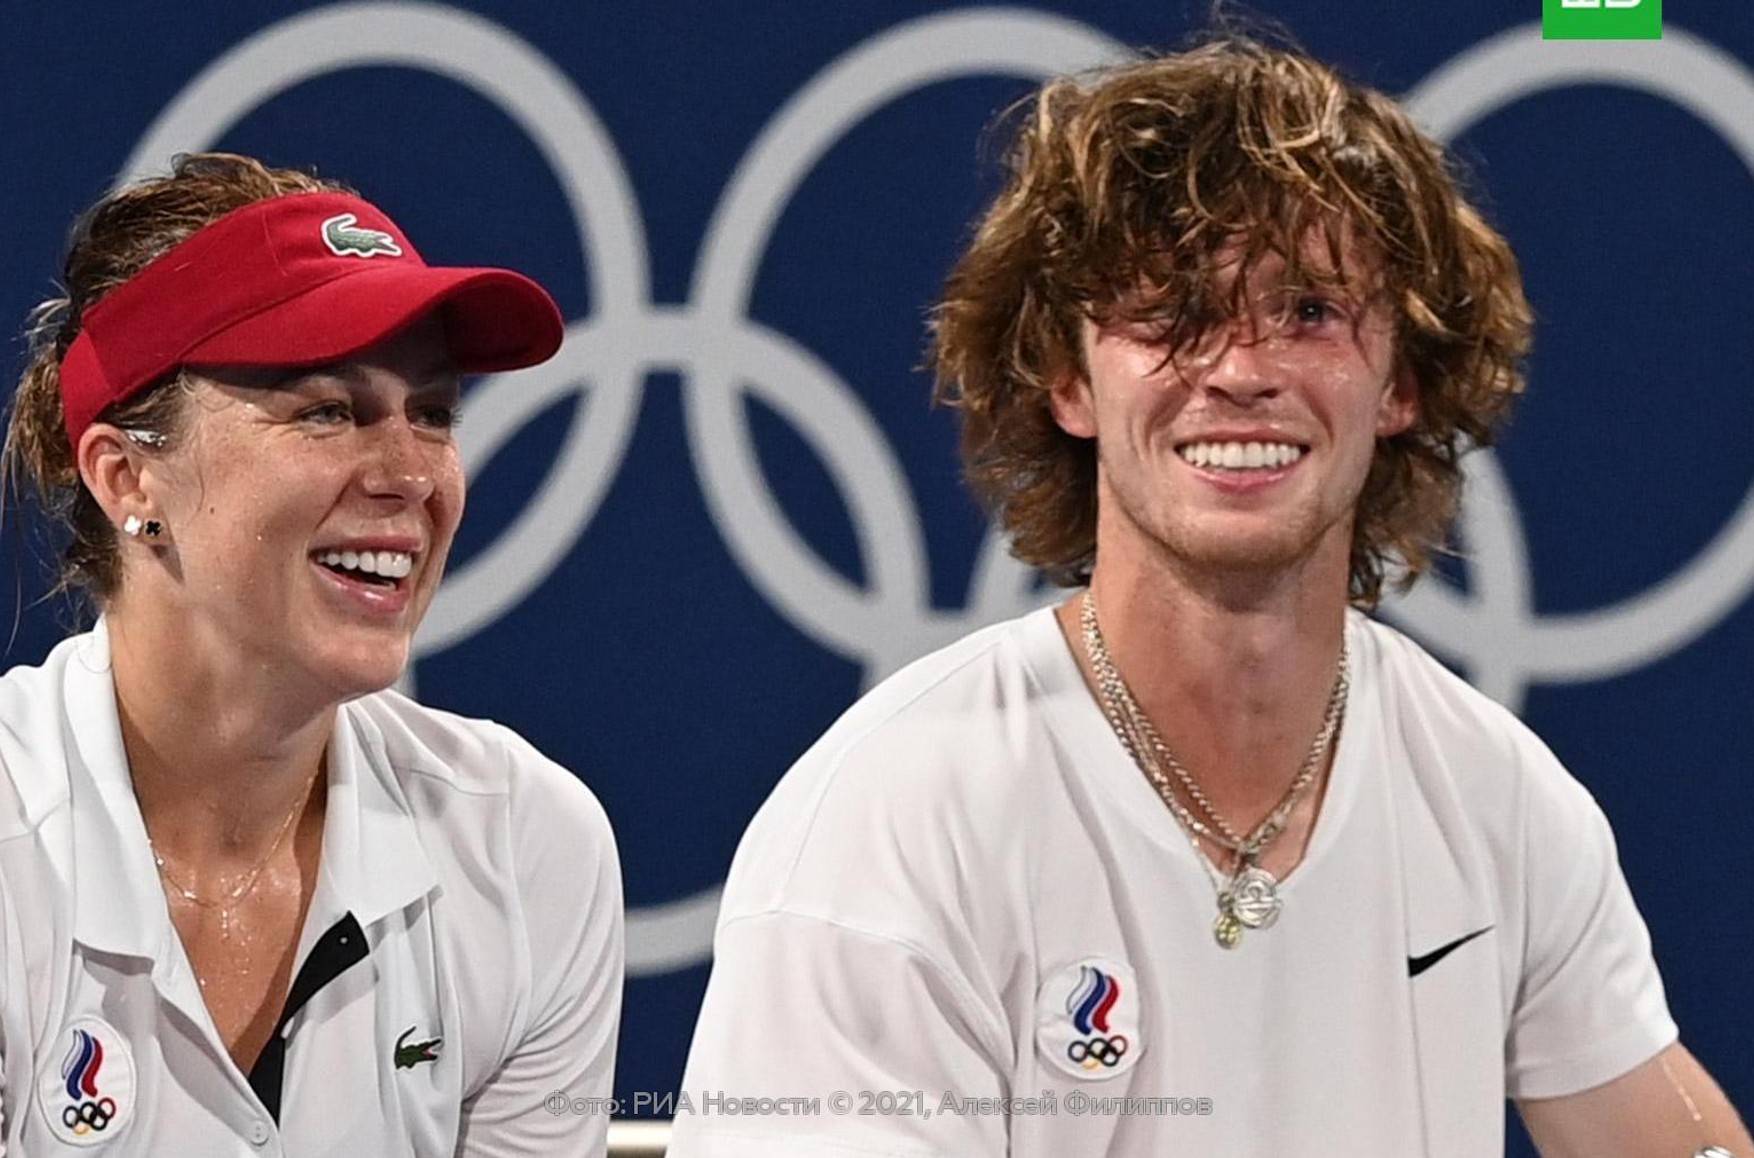 Російські тенісисти Анастасія Павлюченкова і Андрій Рубльов вперше завоювали золото Олімпіади в міксті